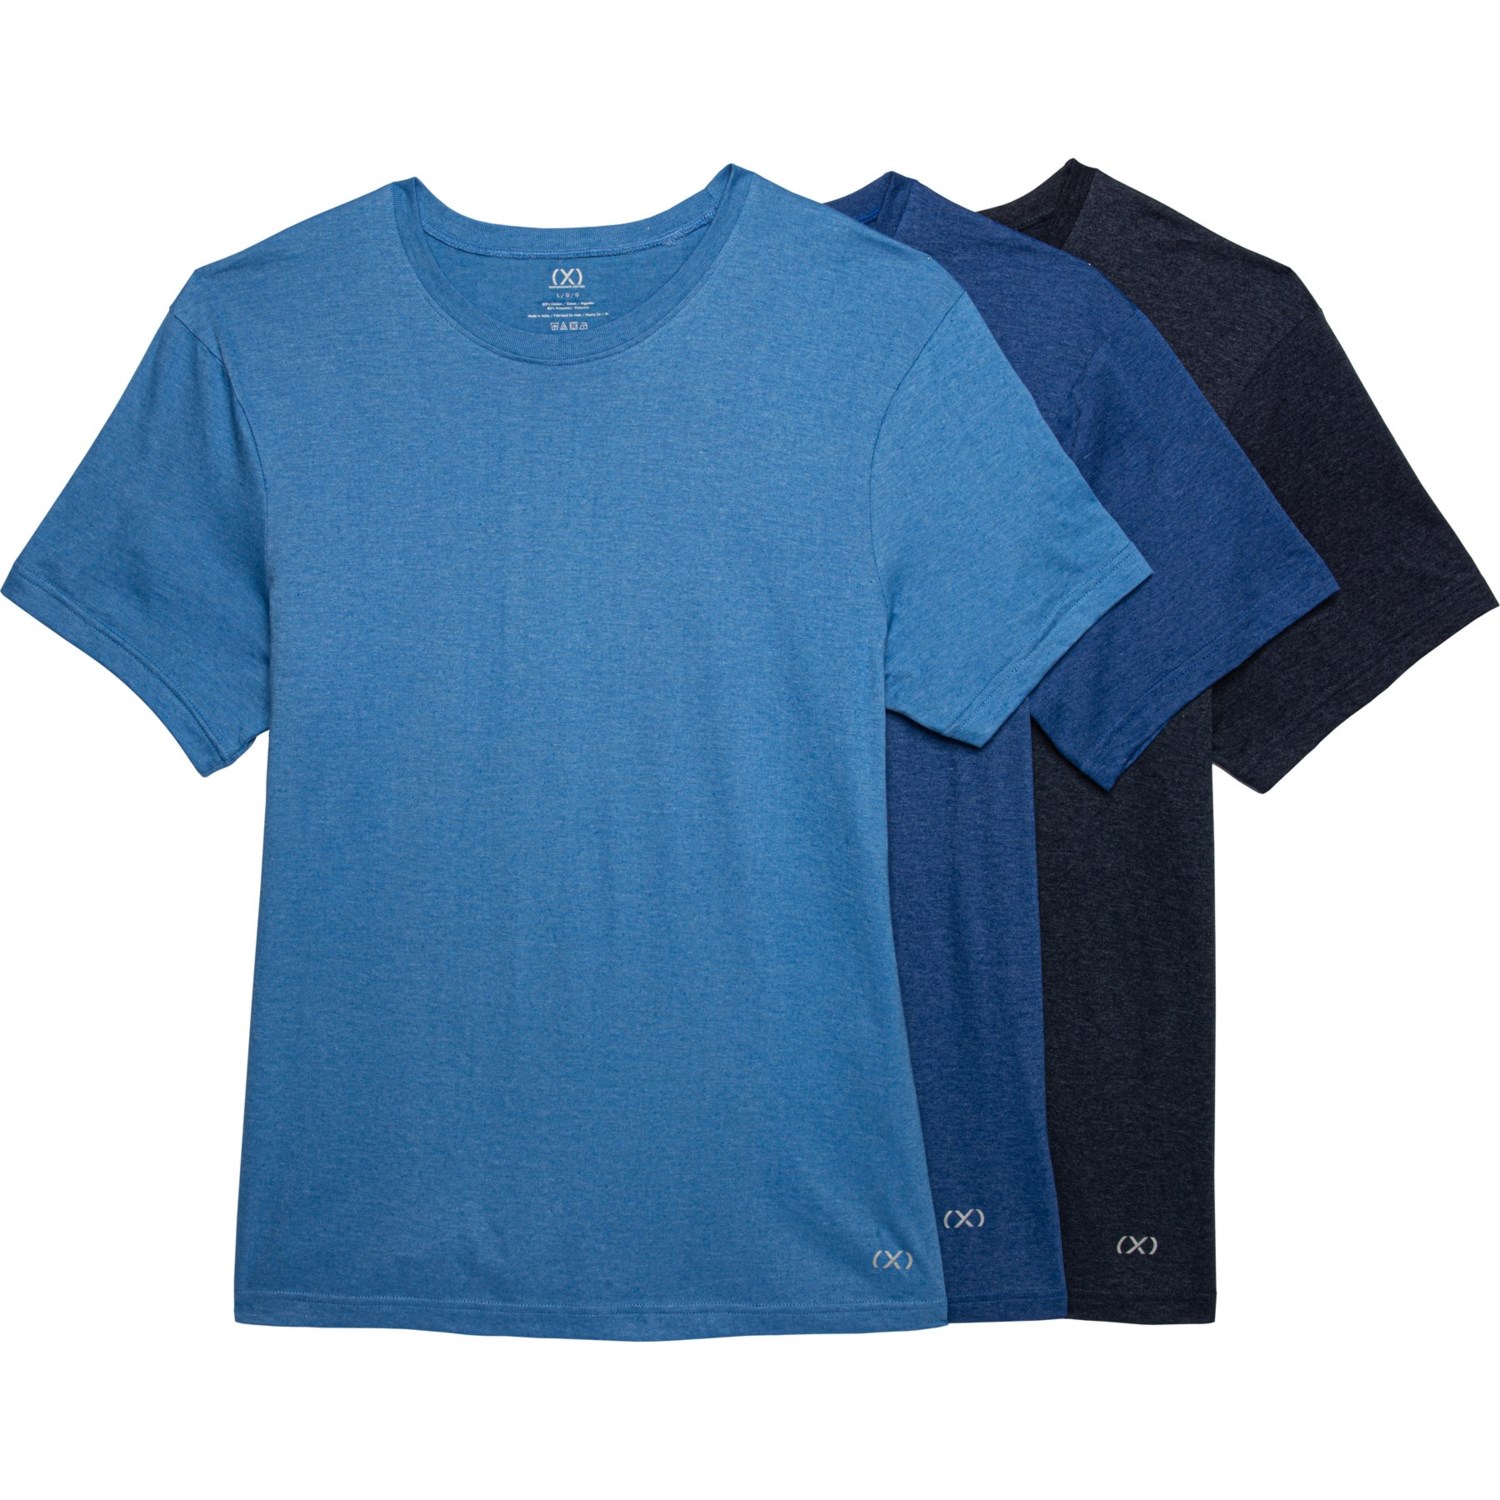 2XIST X High-Performance Cotton Crew Neck T-Shirt - 3-Pack, Short